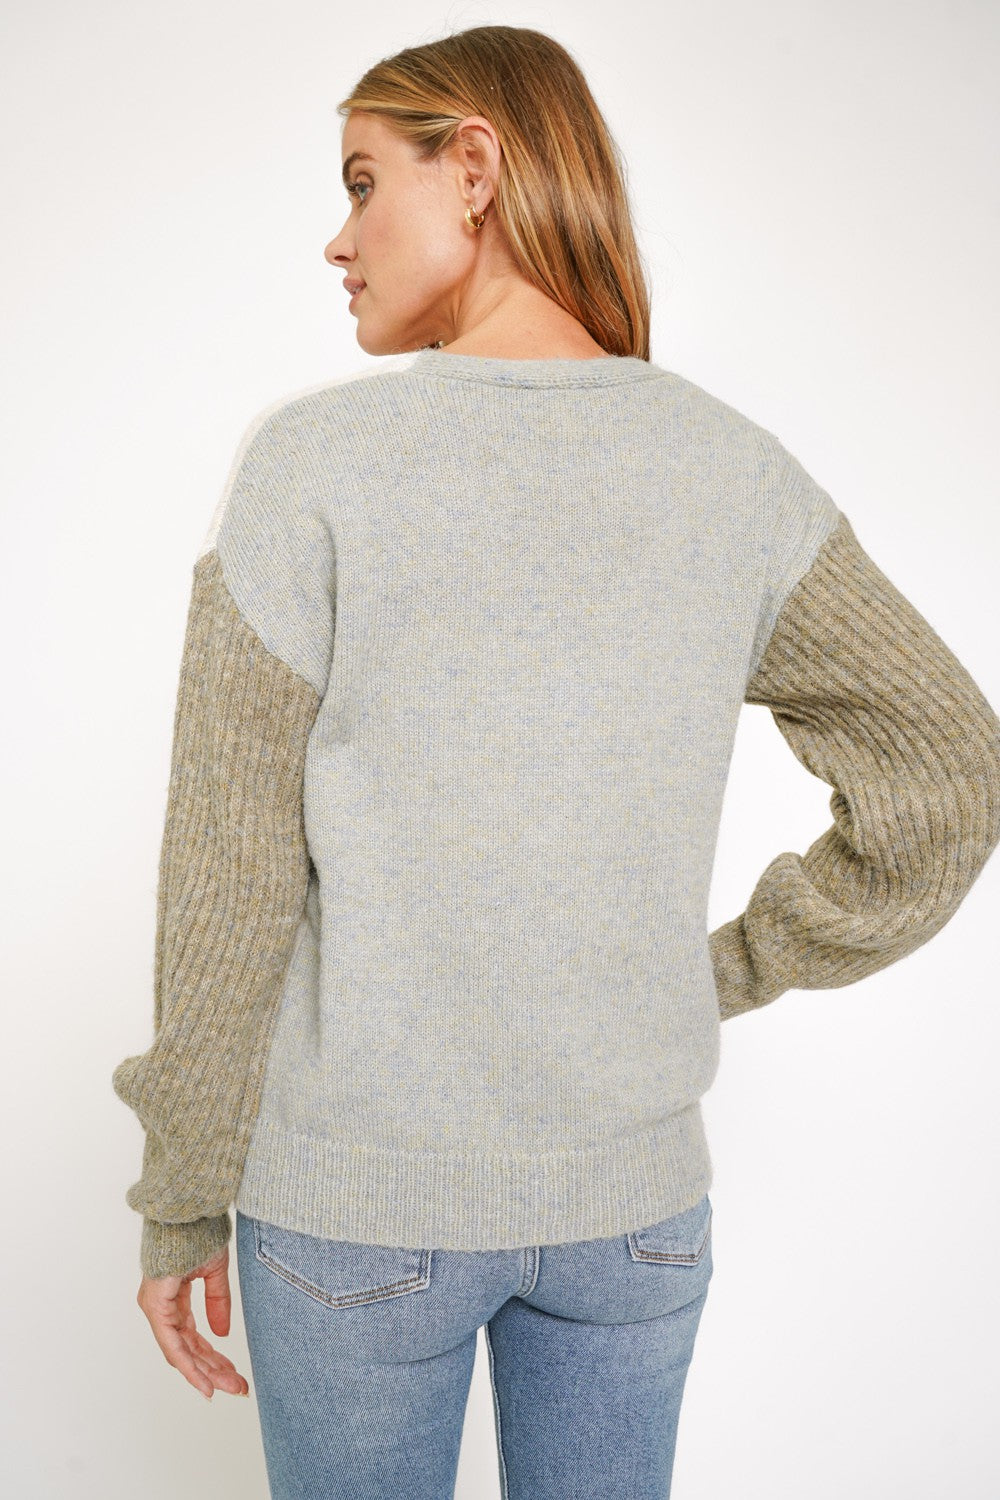 Christina’s Sweater